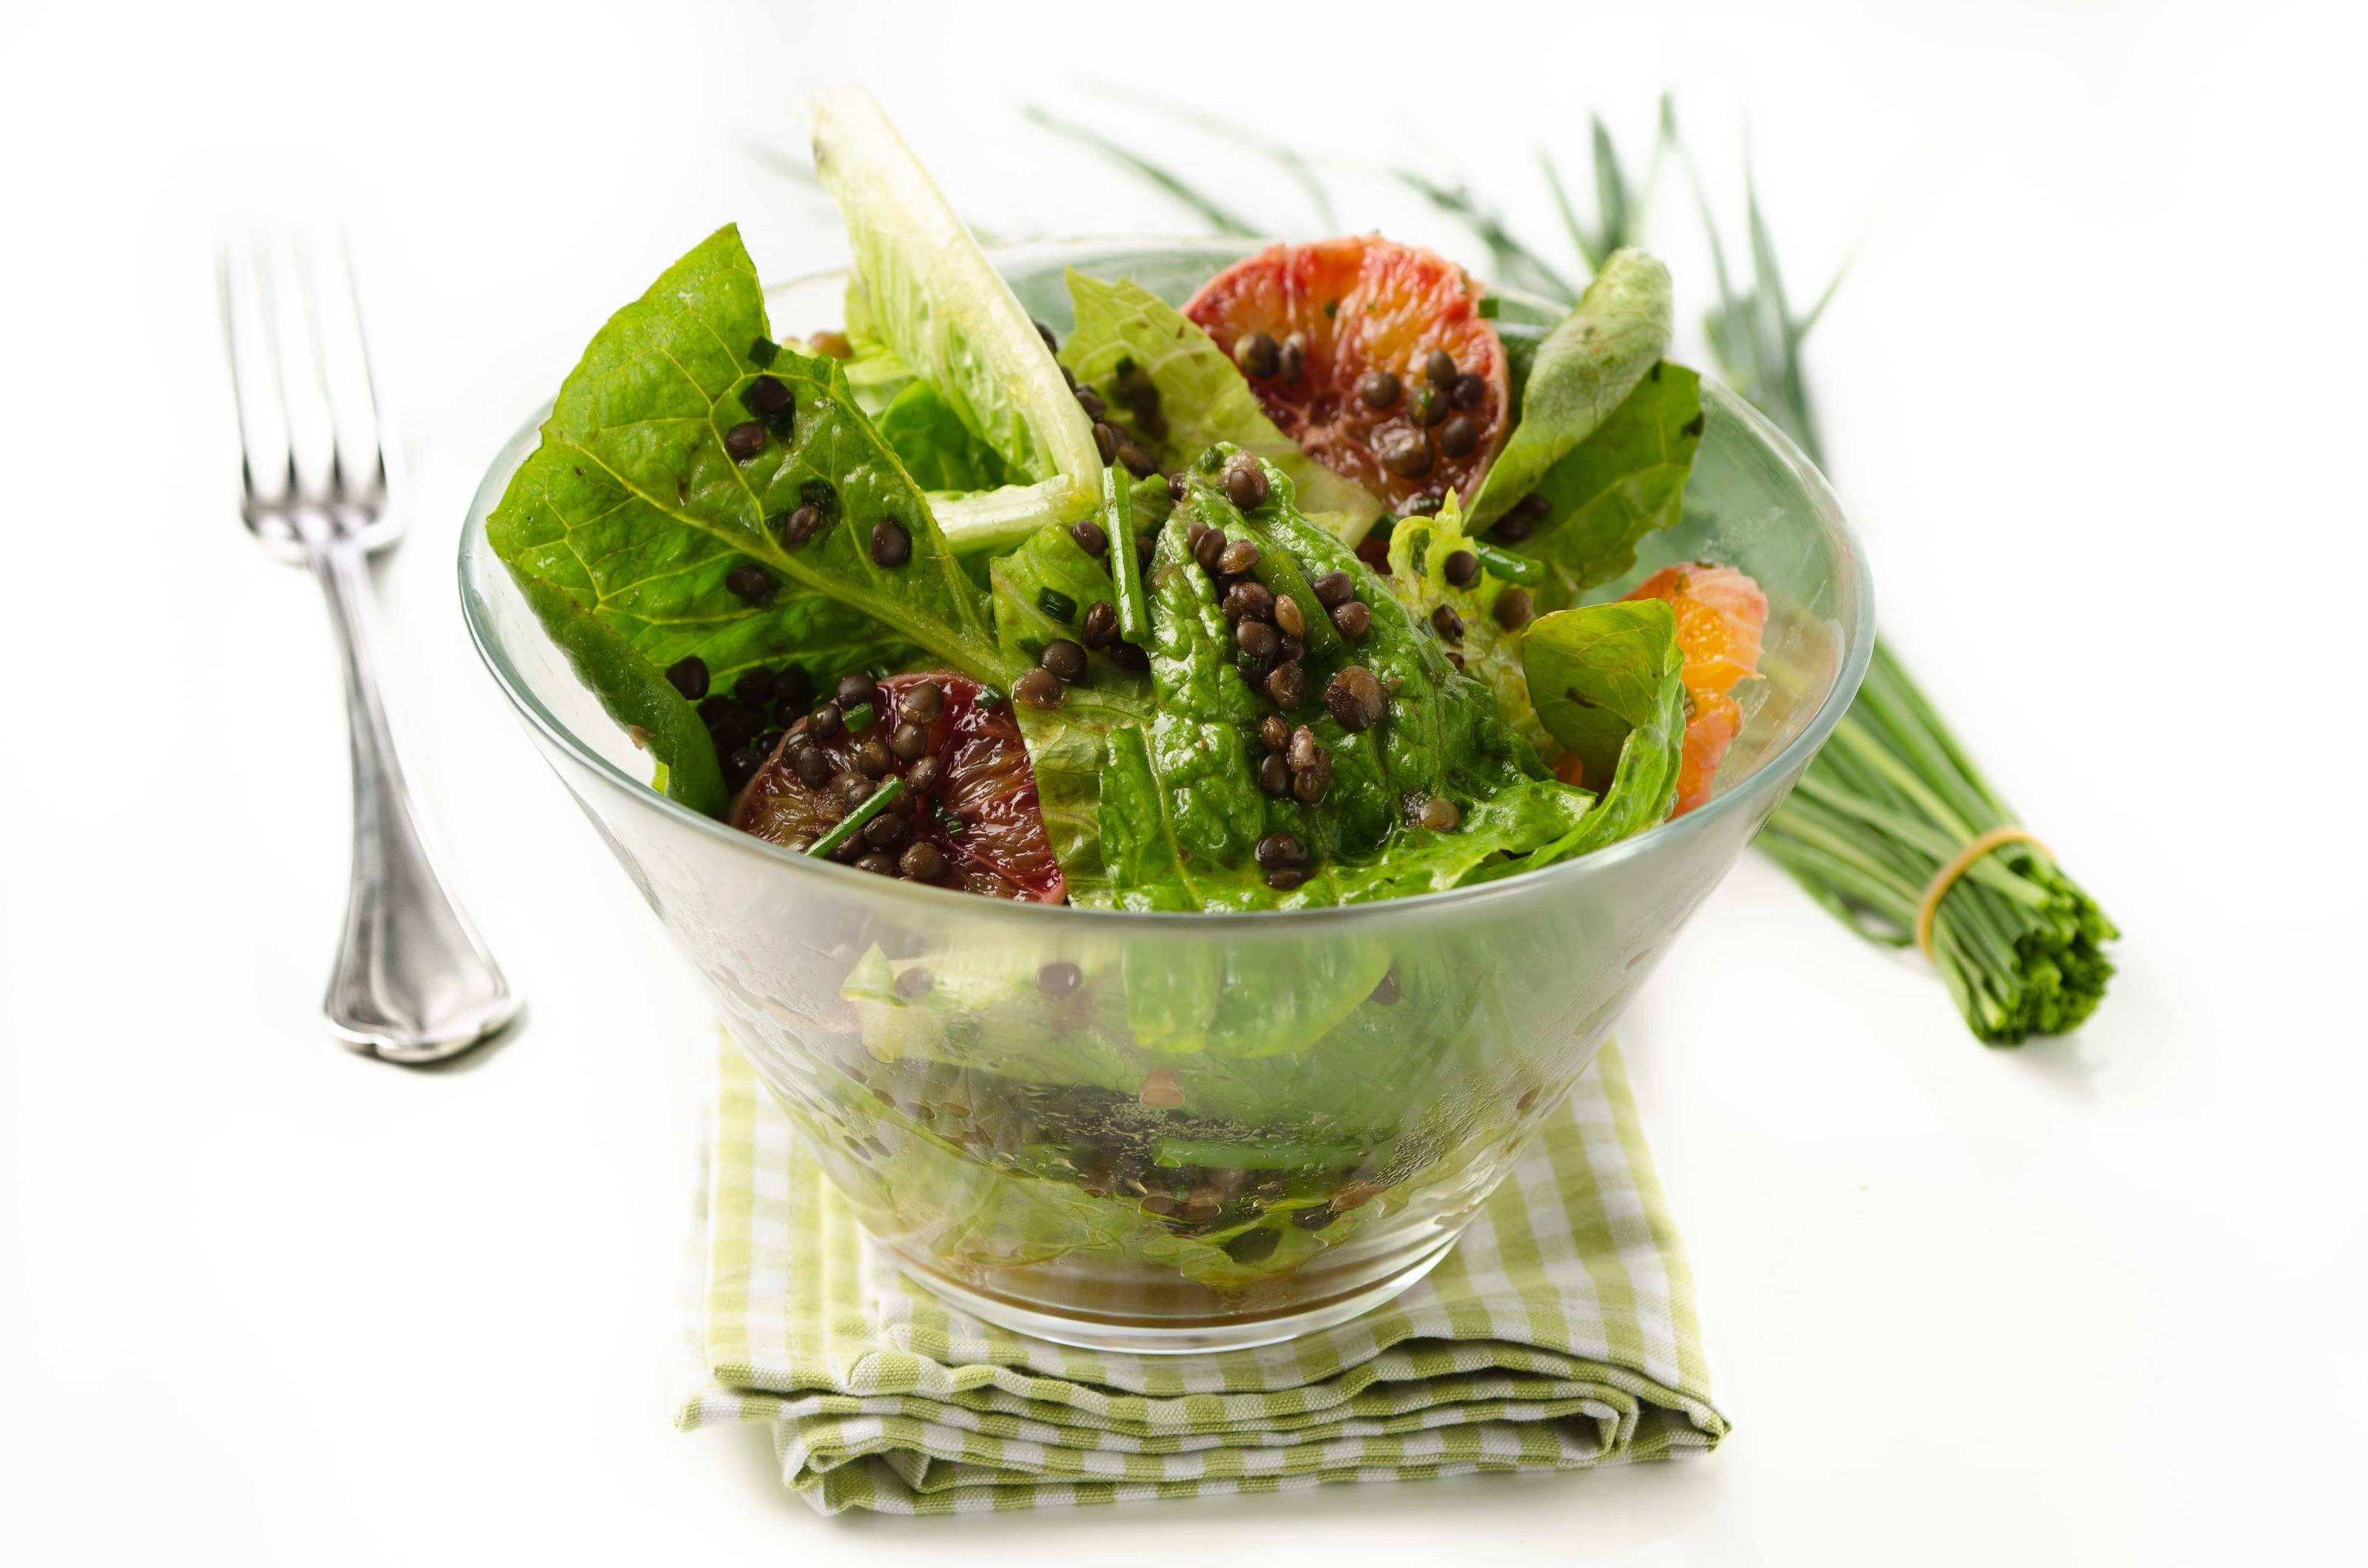 Salat Rezepte - Vegetarische Salate